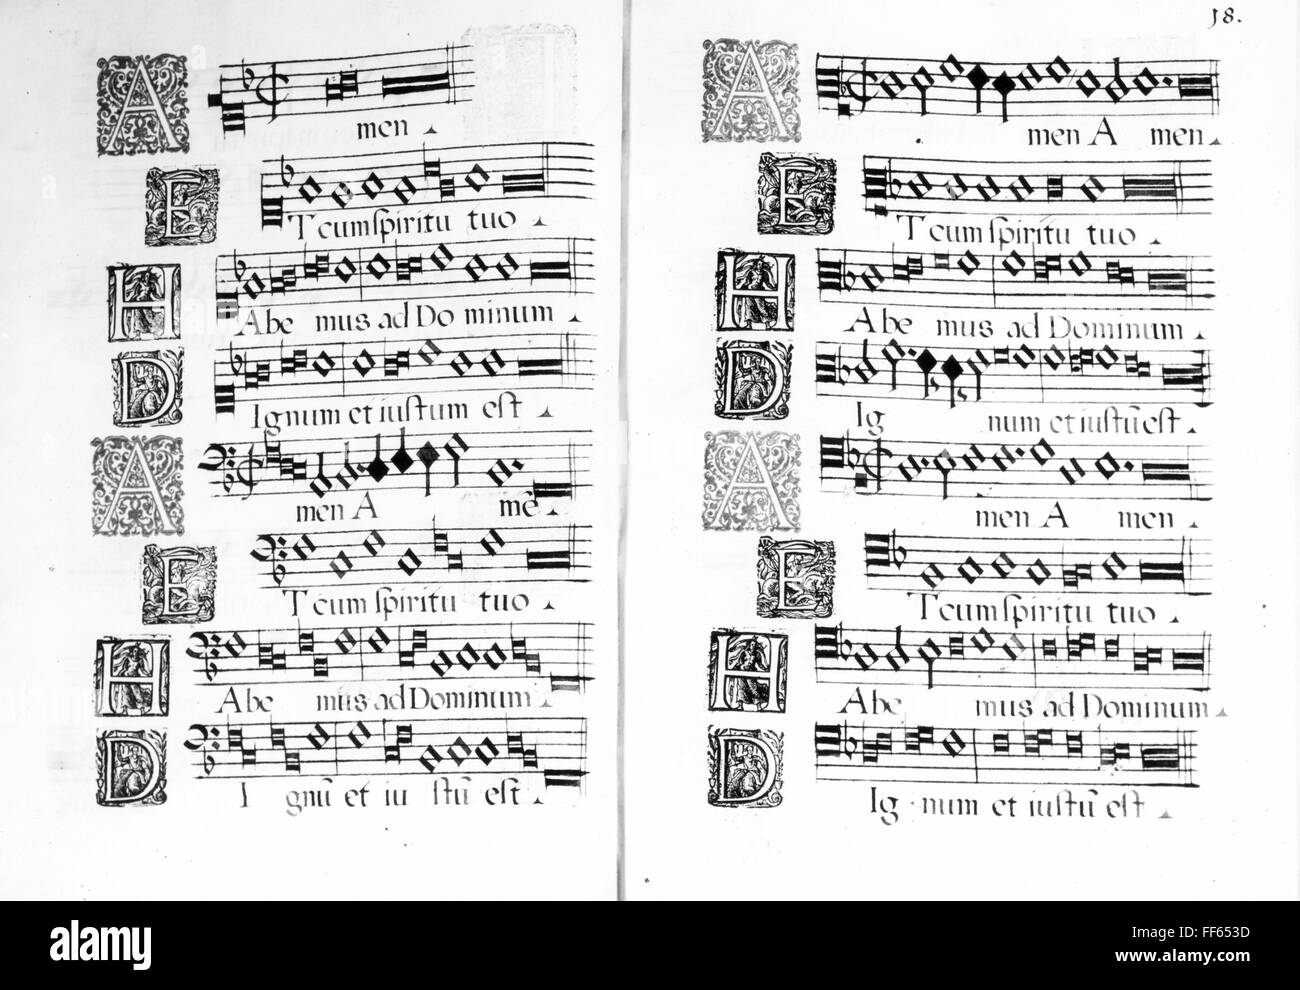 Musik, Notation, 'Cantiones ecclesiasticae' von Matteus offert, 1597, Bayerische Staatsbibliothek, München, Zusatzrechte-Clearenzen-nicht vorhanden Stockfoto